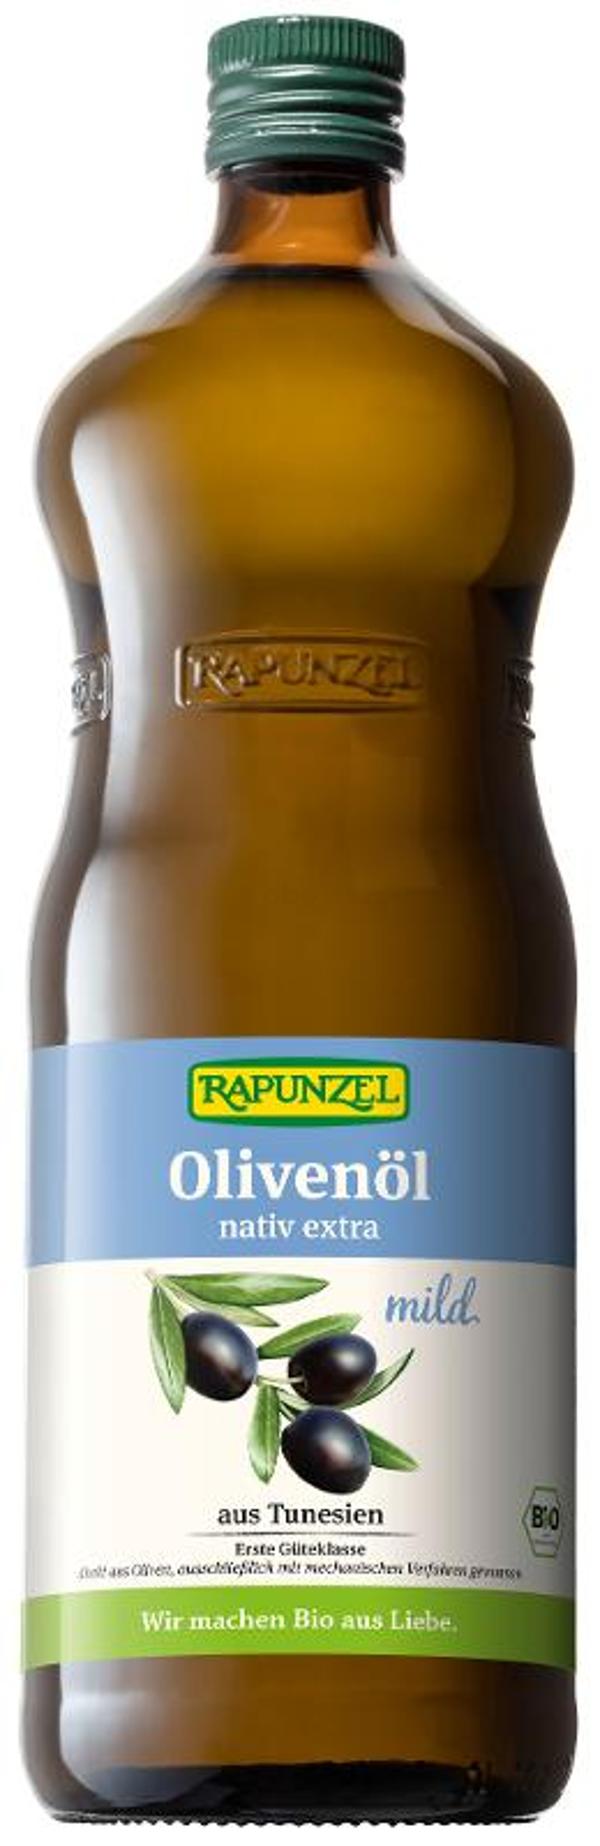 Produktfoto zu Olivenöl mild, nativ extra 1l